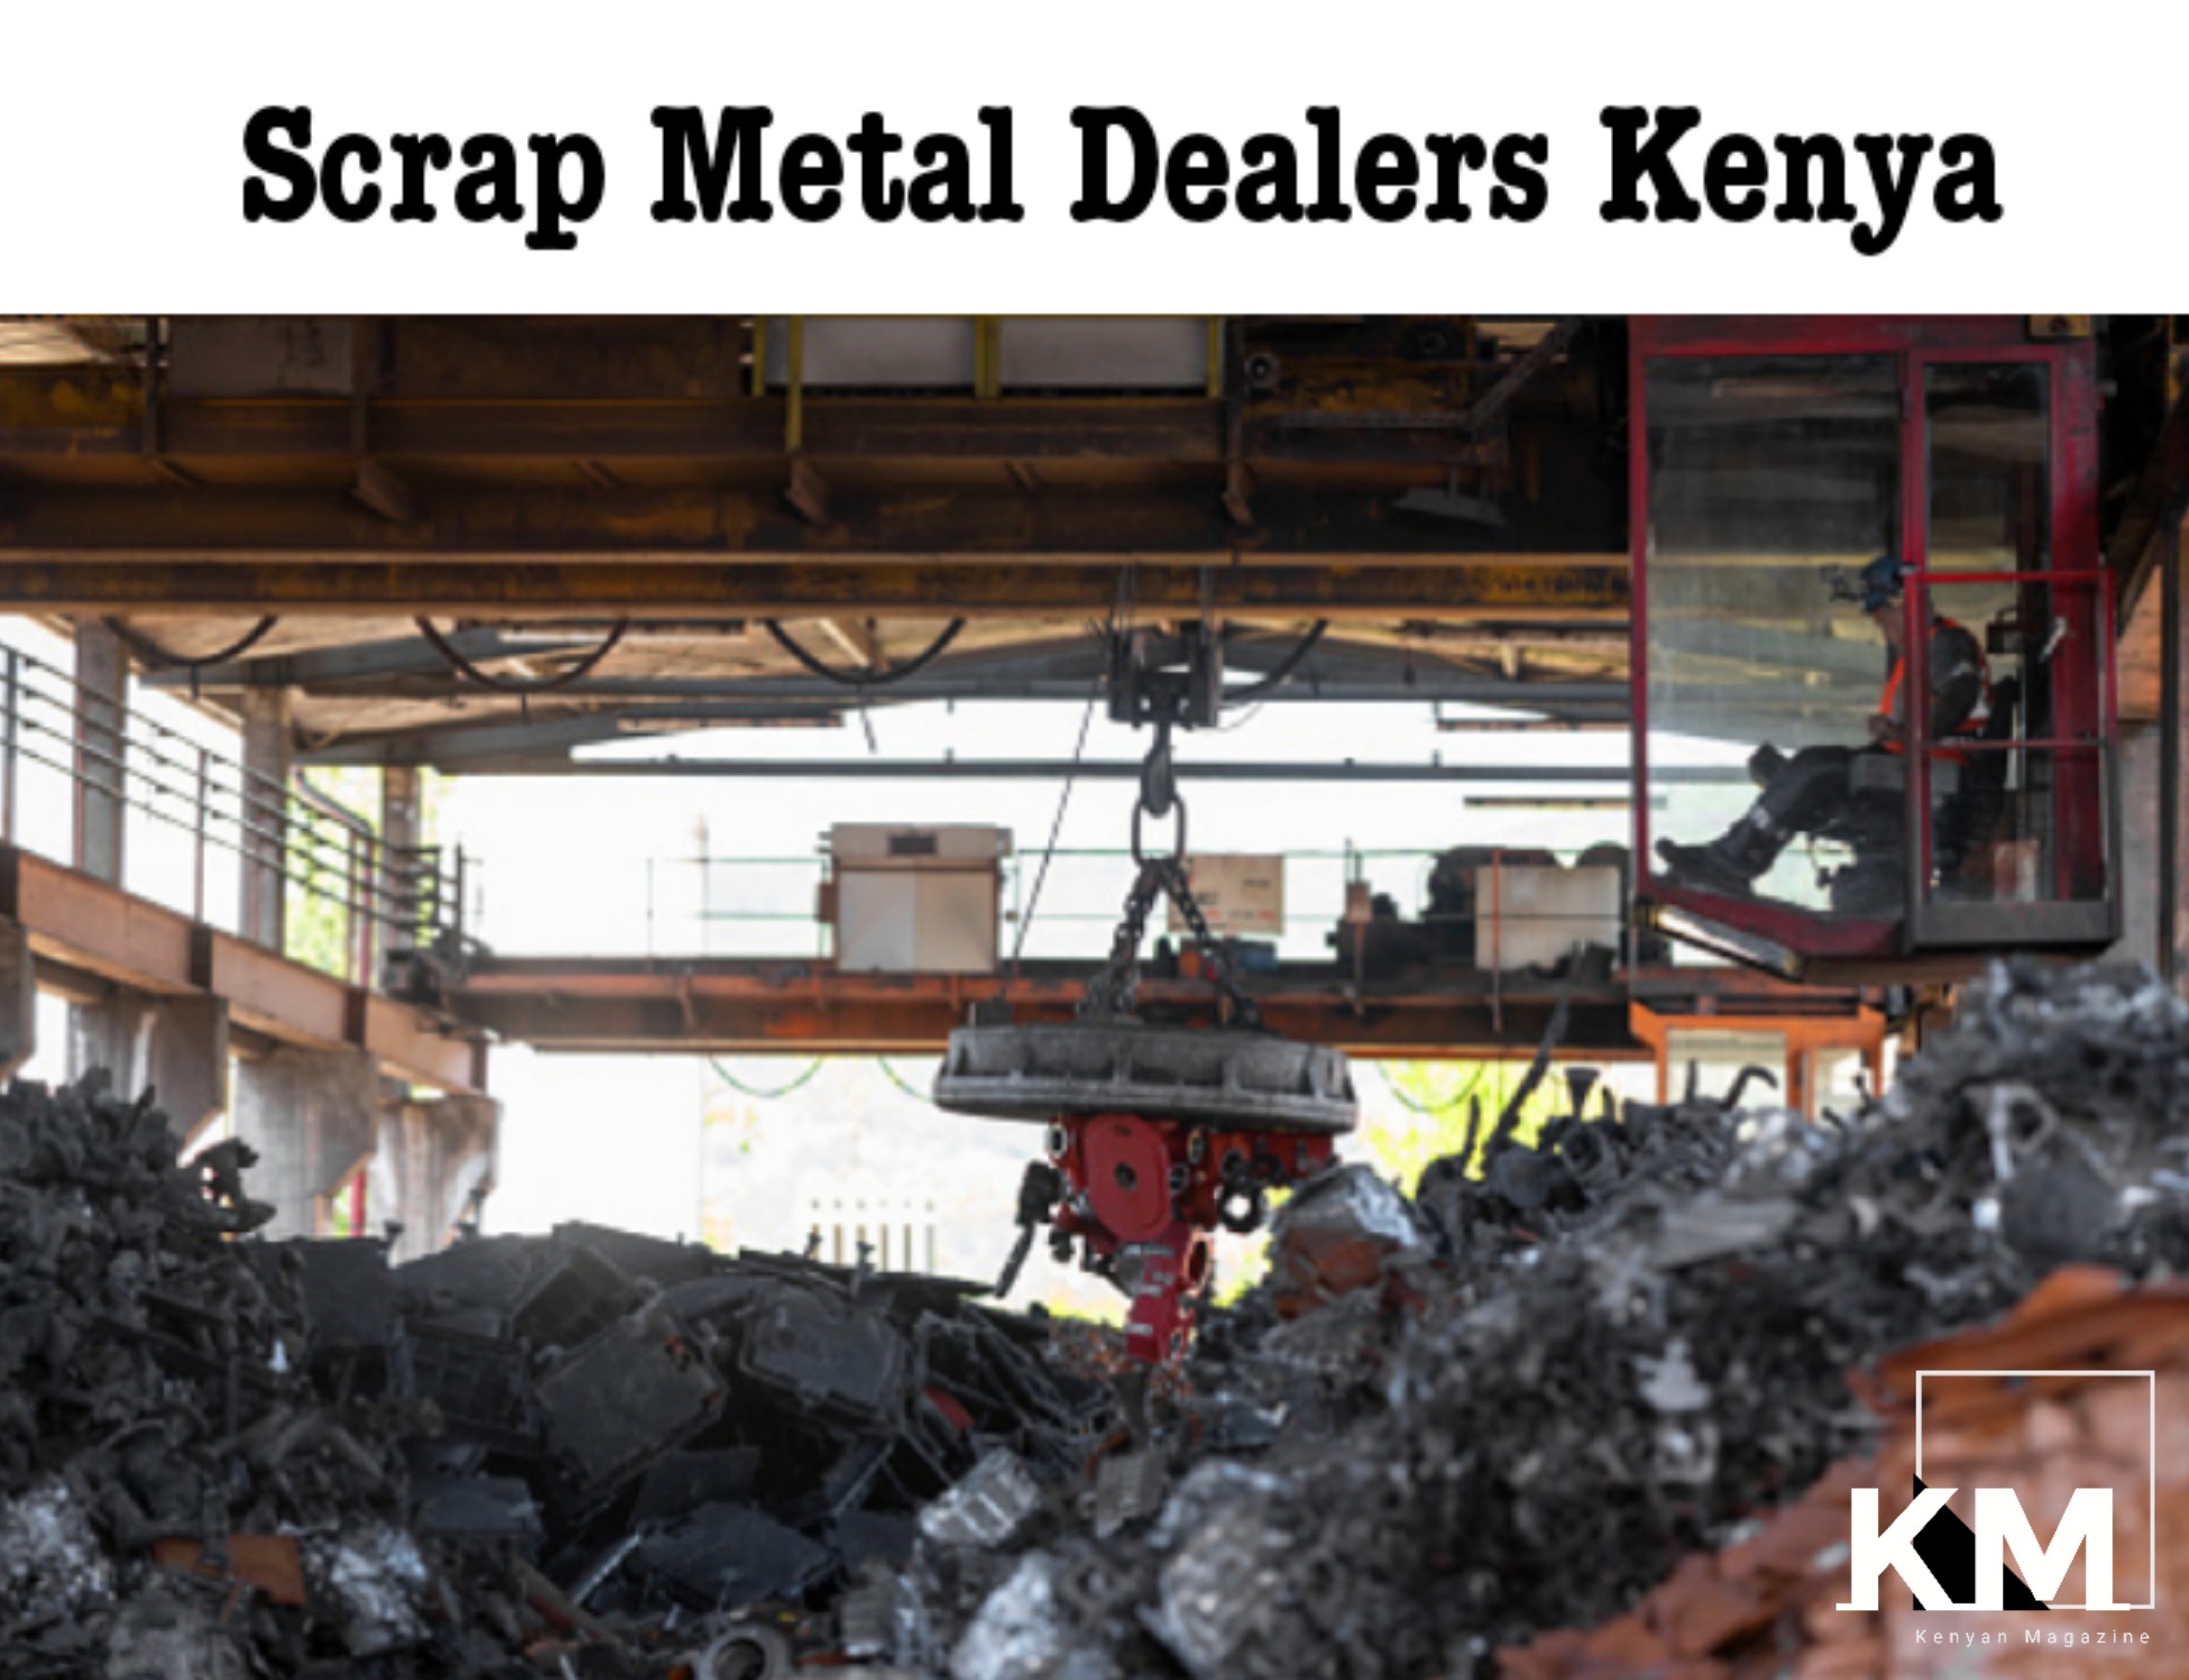 Scrap metal dealers in Kenya